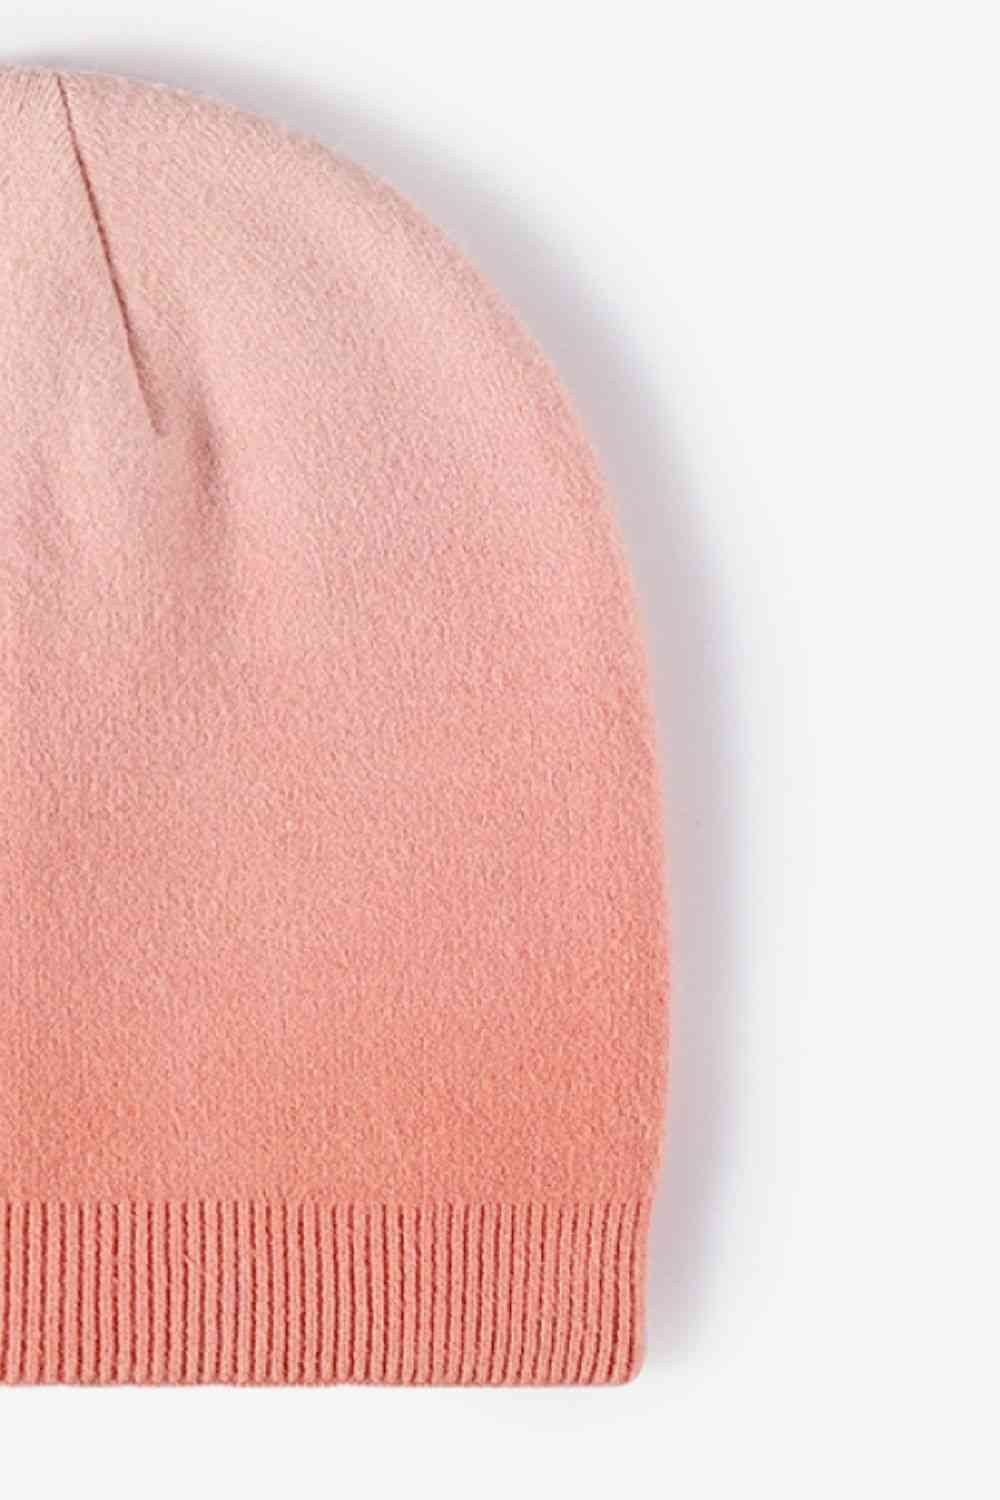 Pink Gradient Knit Beanie Winter Accessories